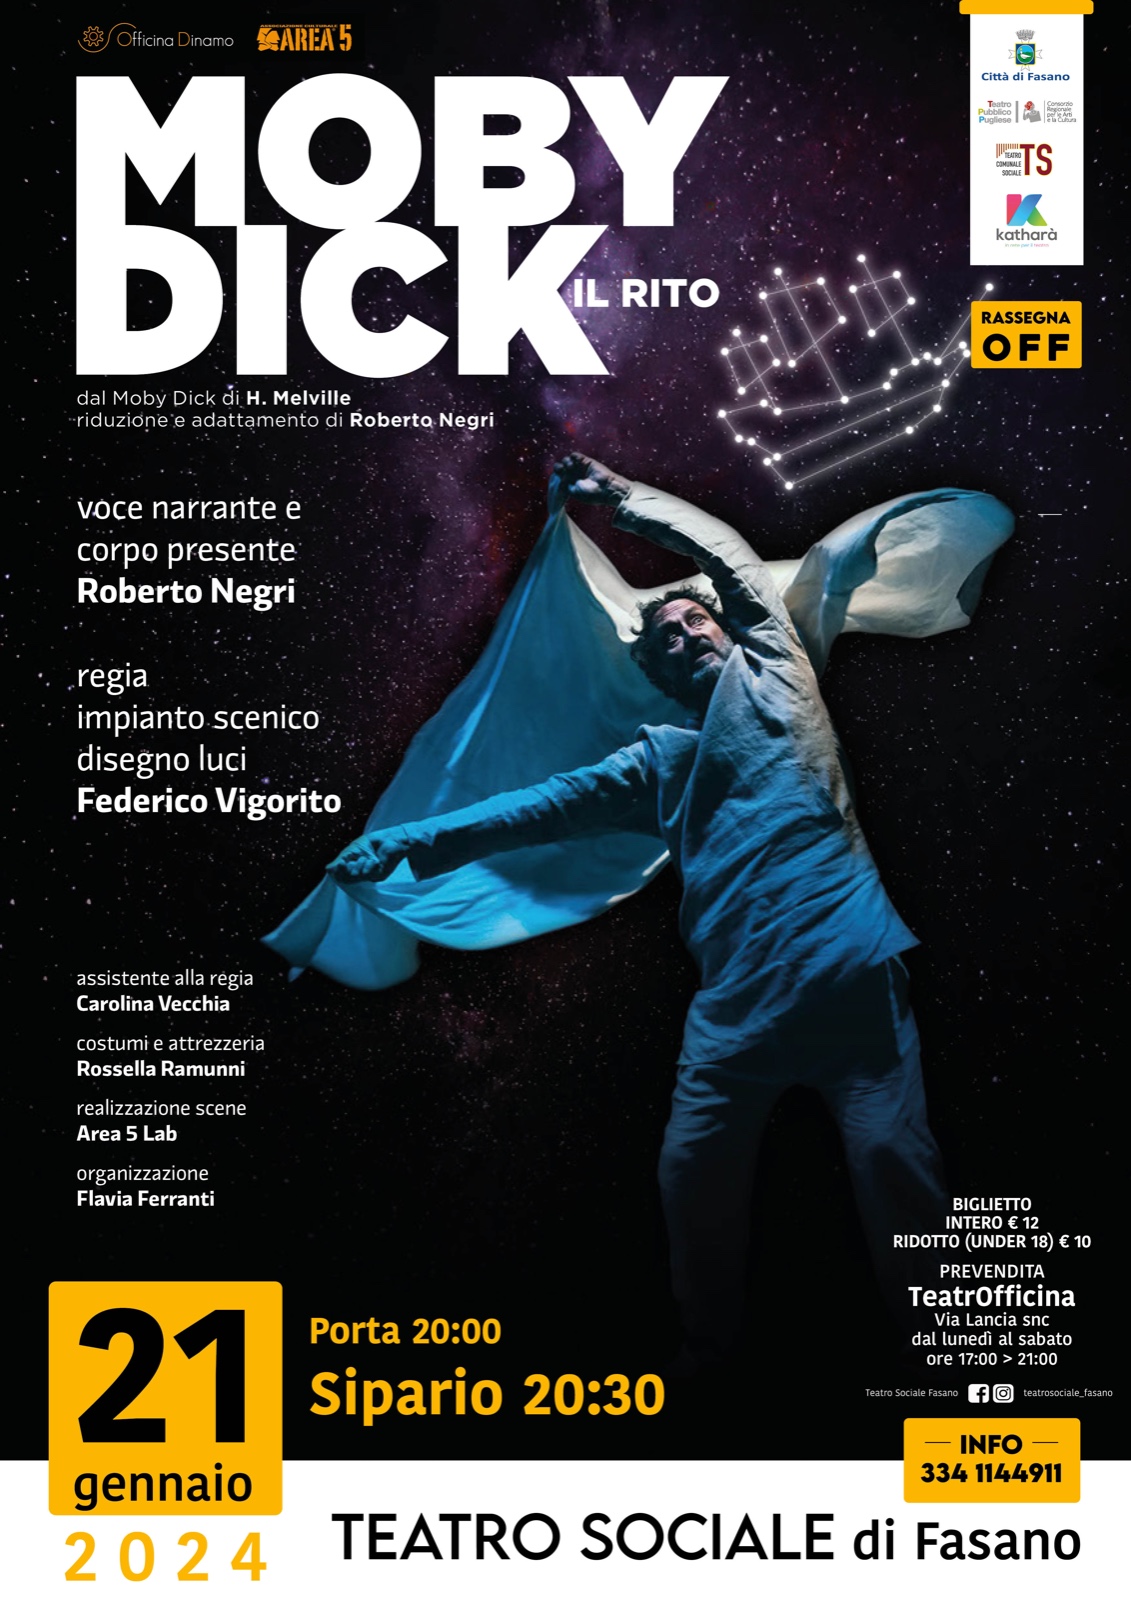 “Moby Dick – Il rito”, al Teatro Sociale lo spettacolo tratto dal romanzo di Herman Melville